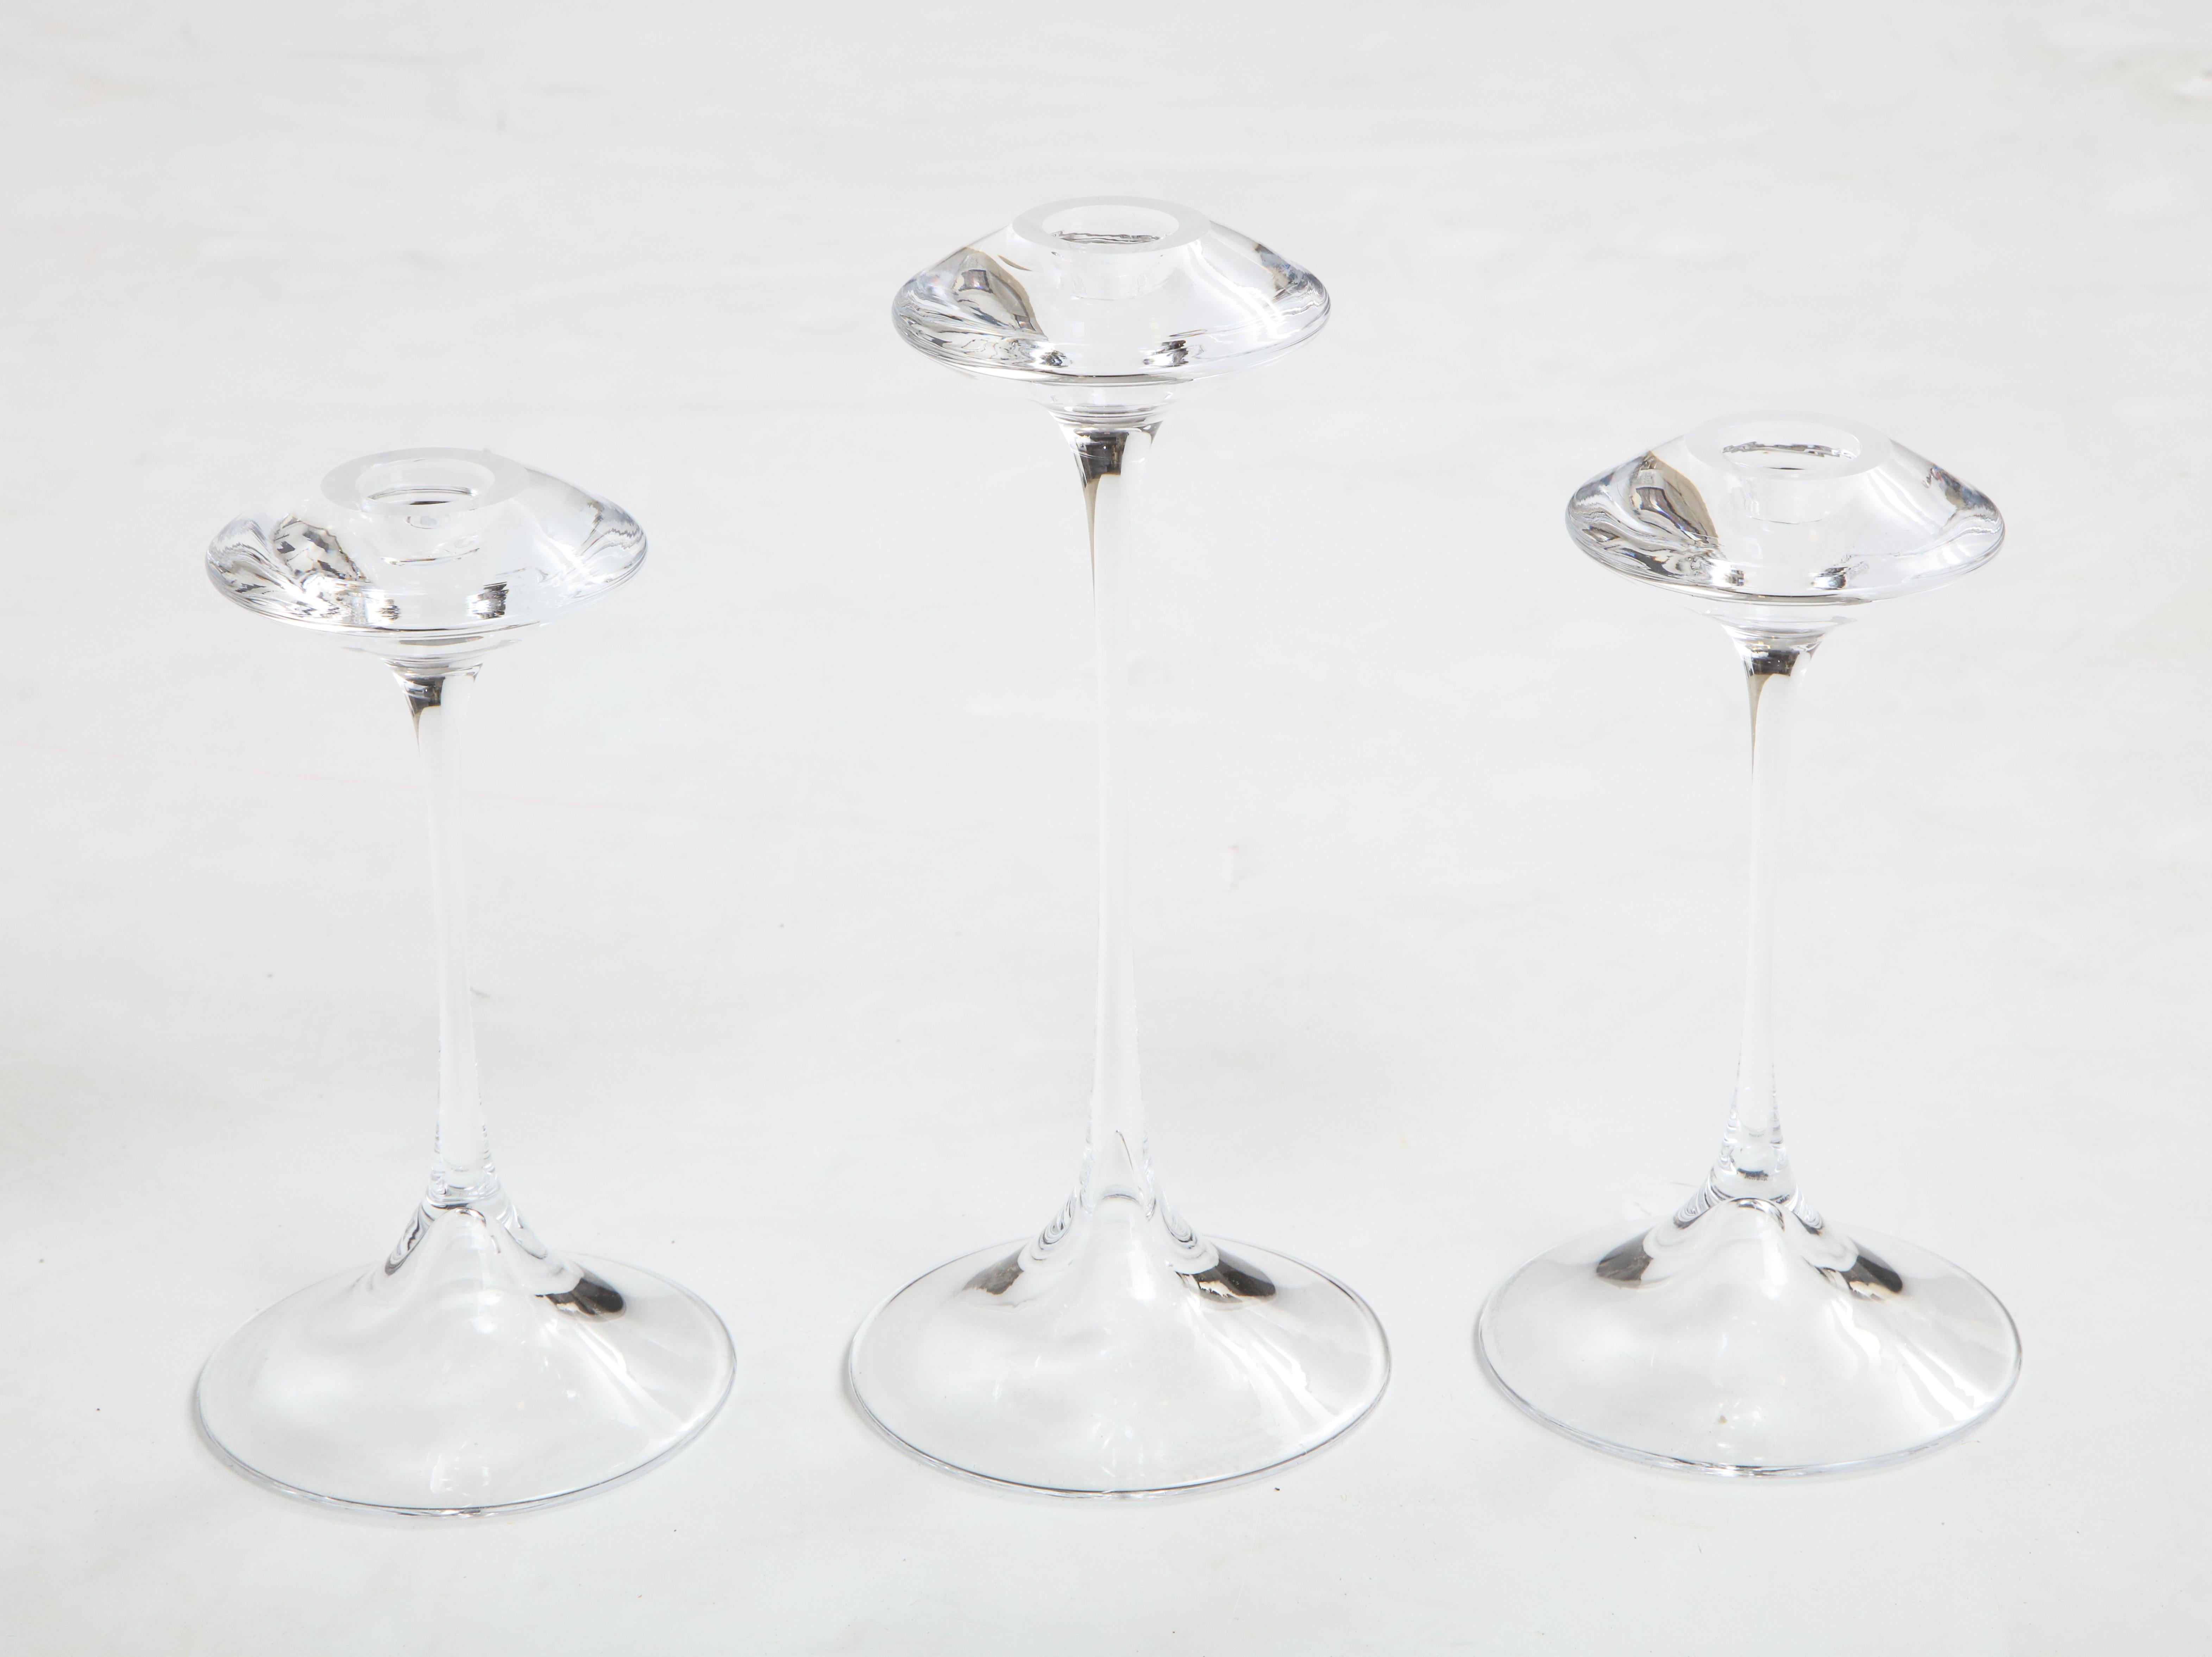 Stunning set of 3 Kjell Engman for Kosta Boda glass candlesticks.

The two smaller candlesticks height is 7''.